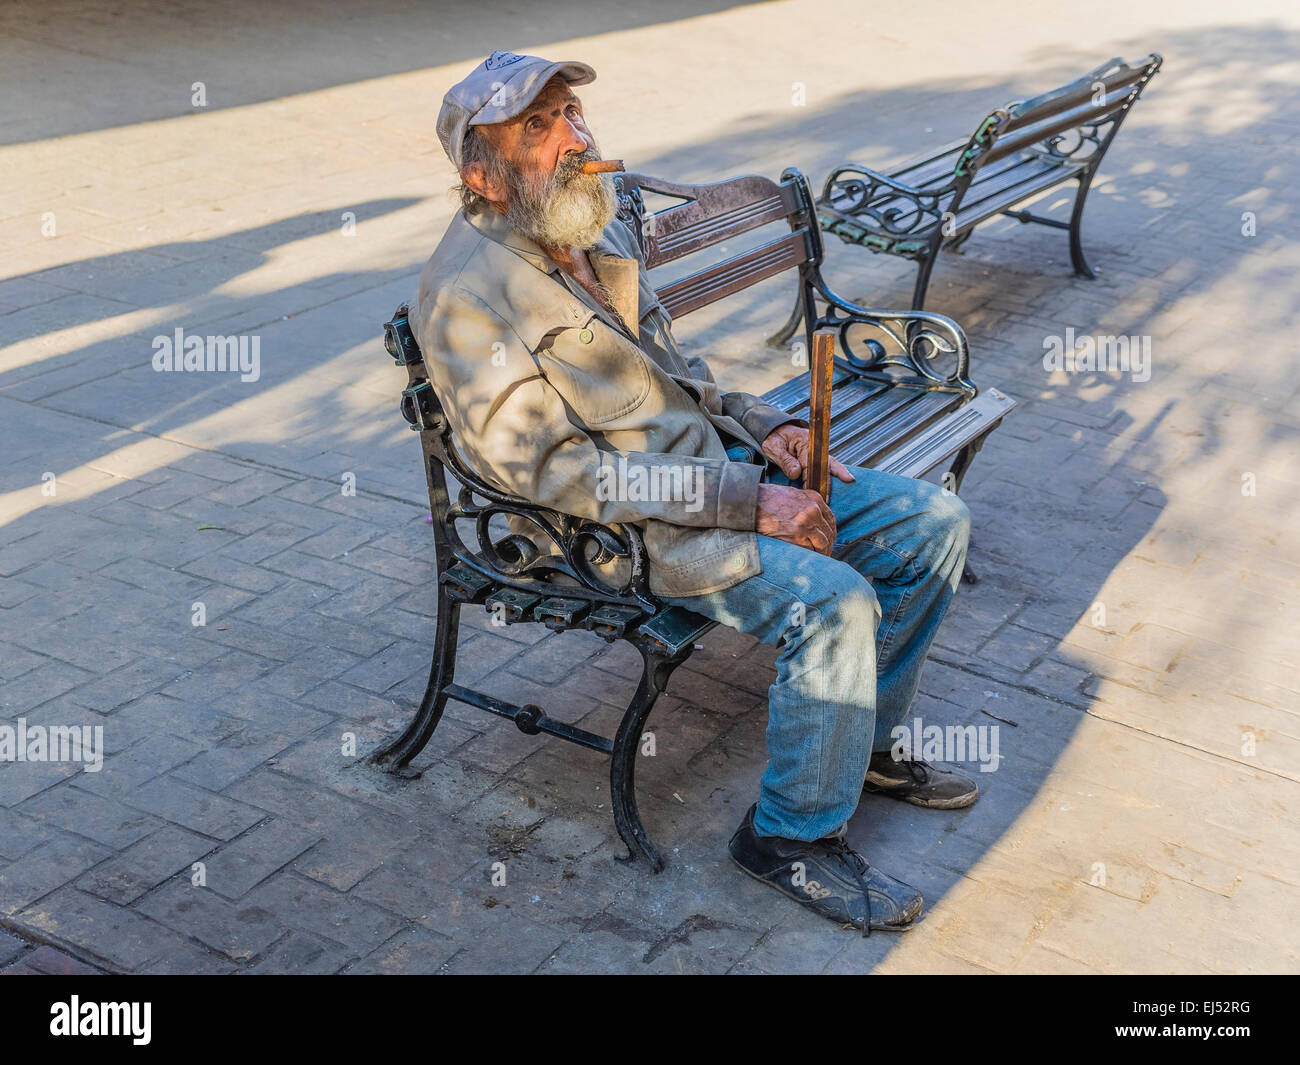 Eine kubanische männlichen Senioren mit einer Zigarre sitzt auf einer Bank mit einem Baseball-Typ-Hut, blickte in den Himmel im späten Nachmittag Licht. Stockfoto